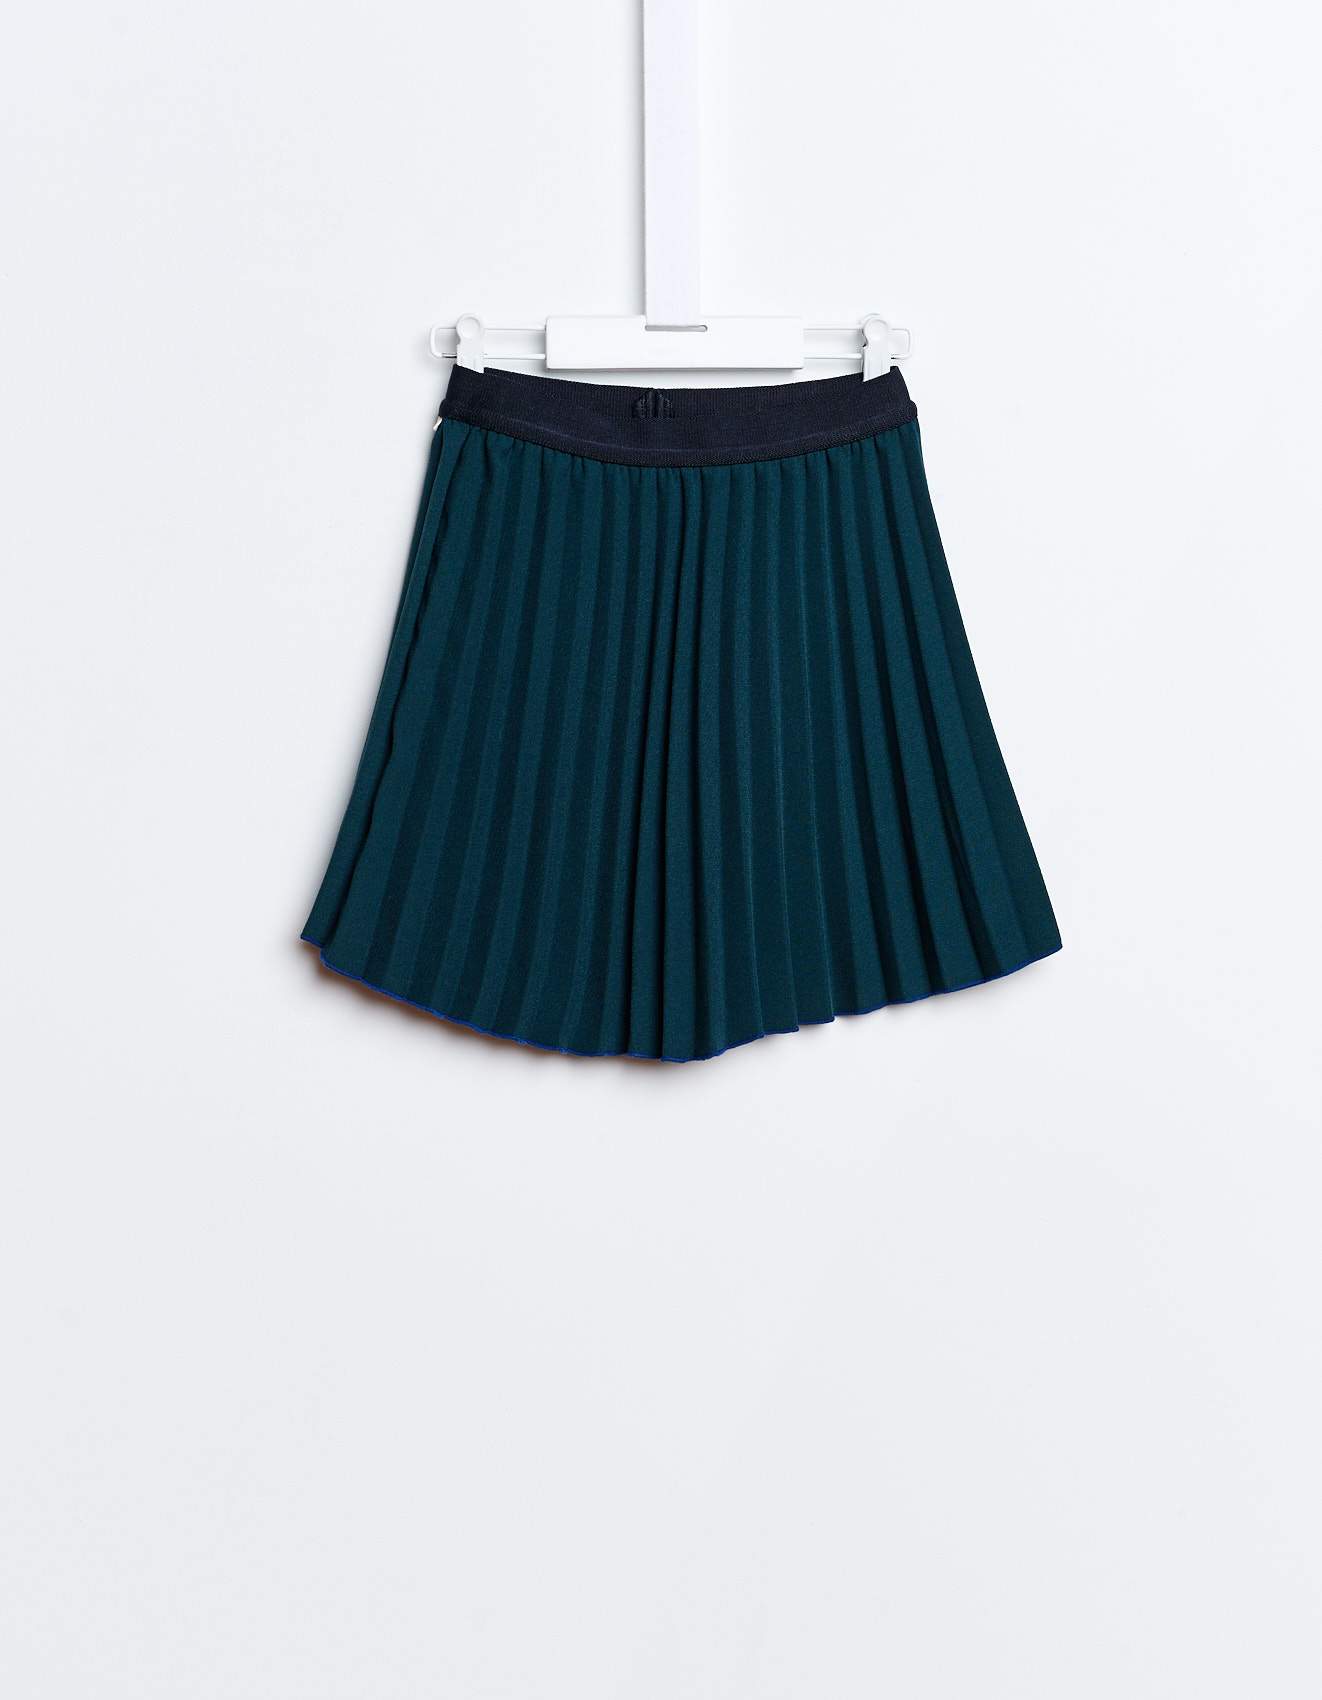 letitia-skirt-bellerose.jpg